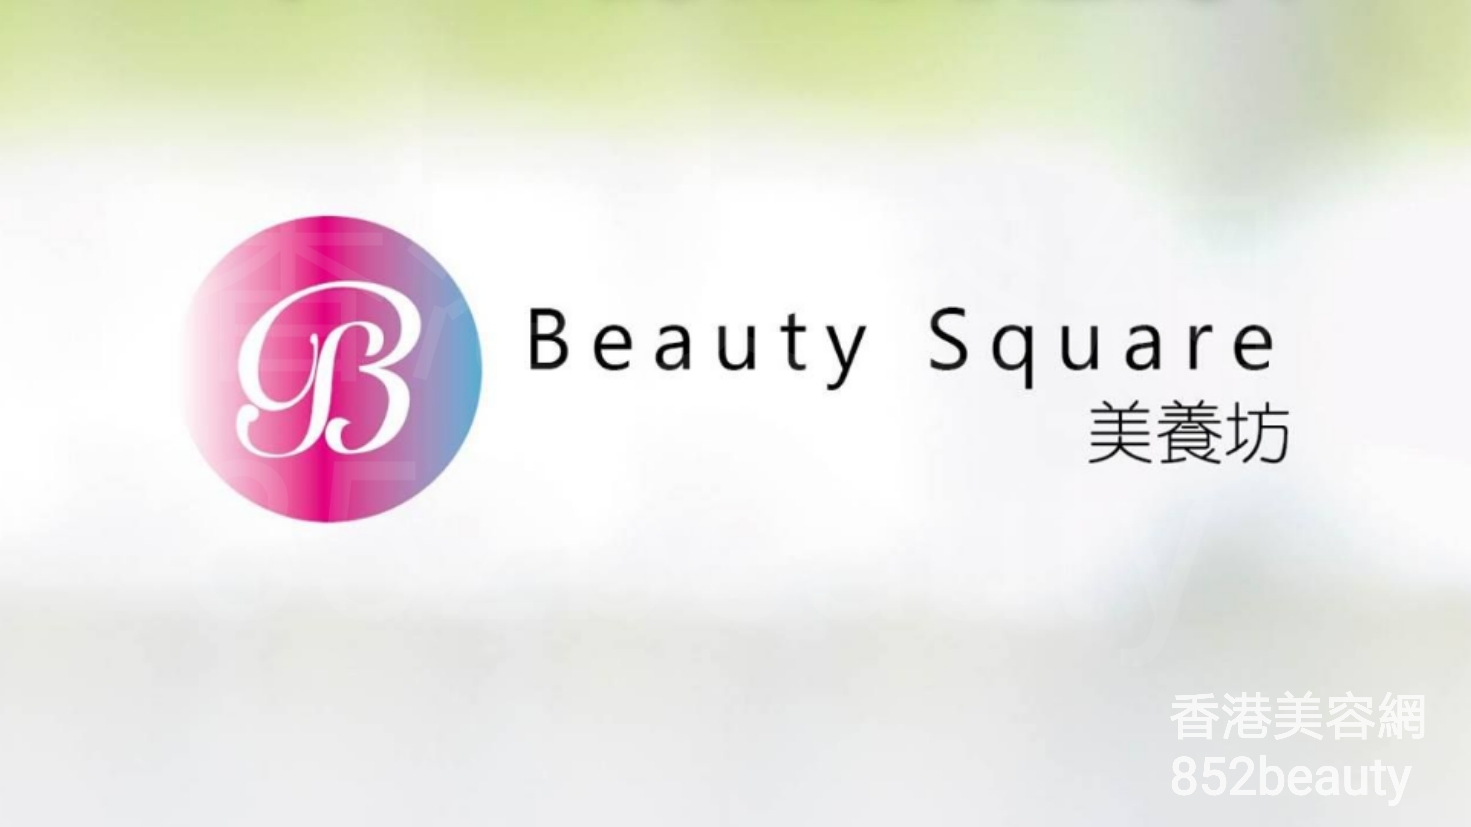 Massage/SPA: 美養坊 Beauty Square (光榮結業)